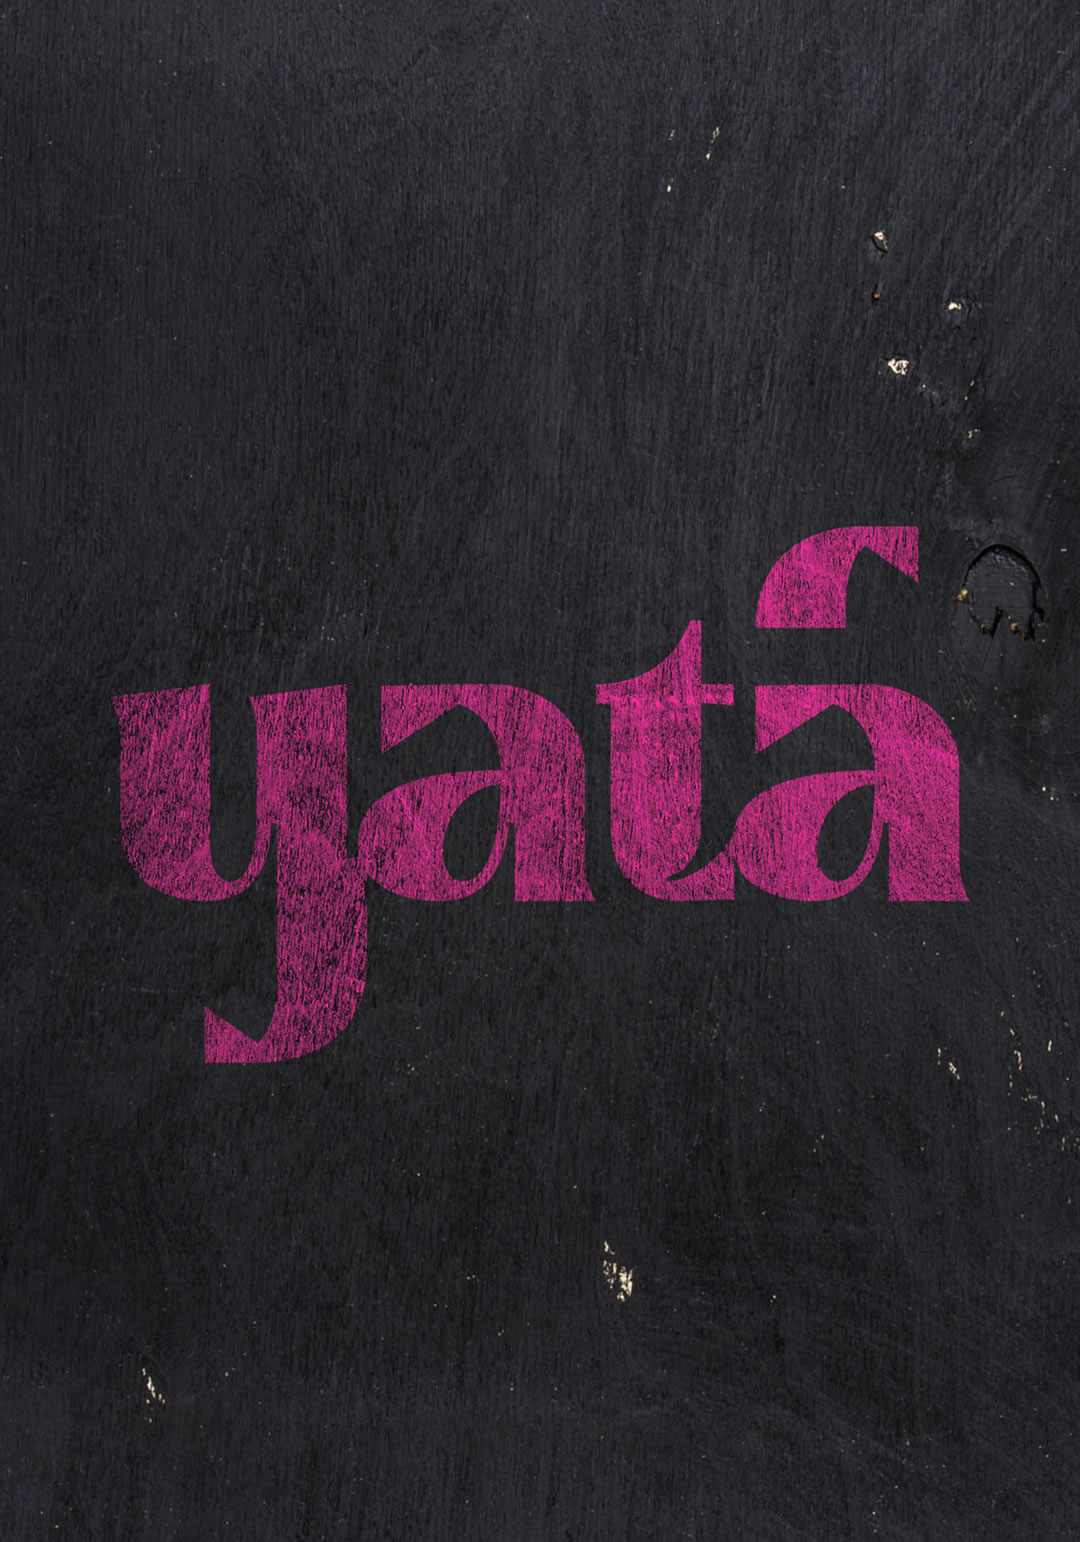 Yatá › Diseño de marca (logotipo)